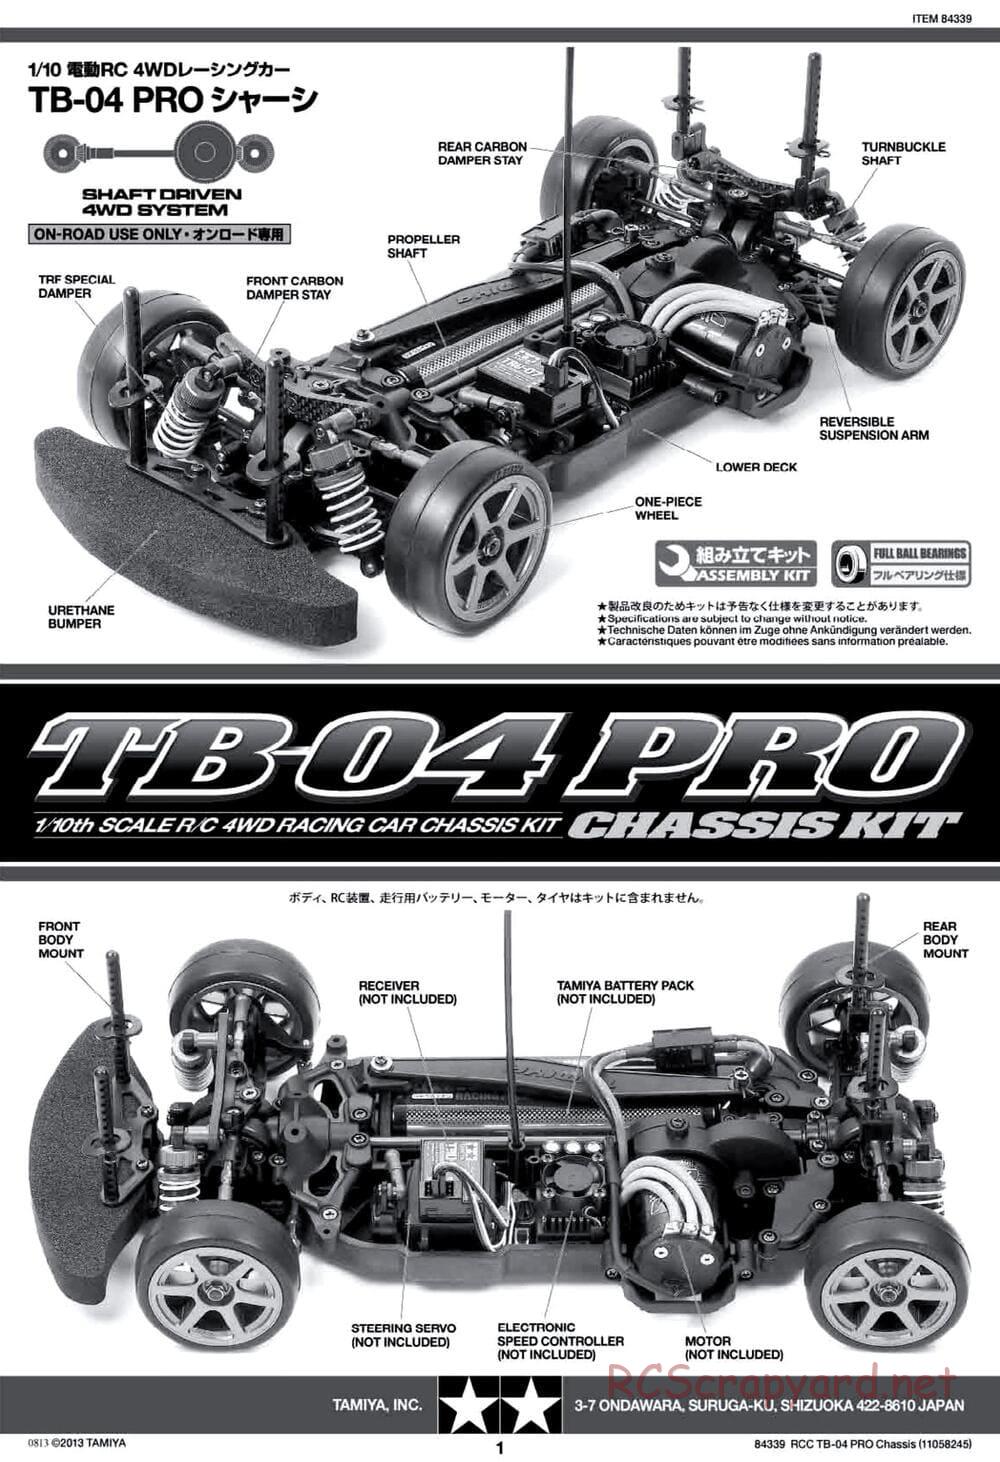 Tamiya - TB-04 Pro Chassis - Manual - Page 1